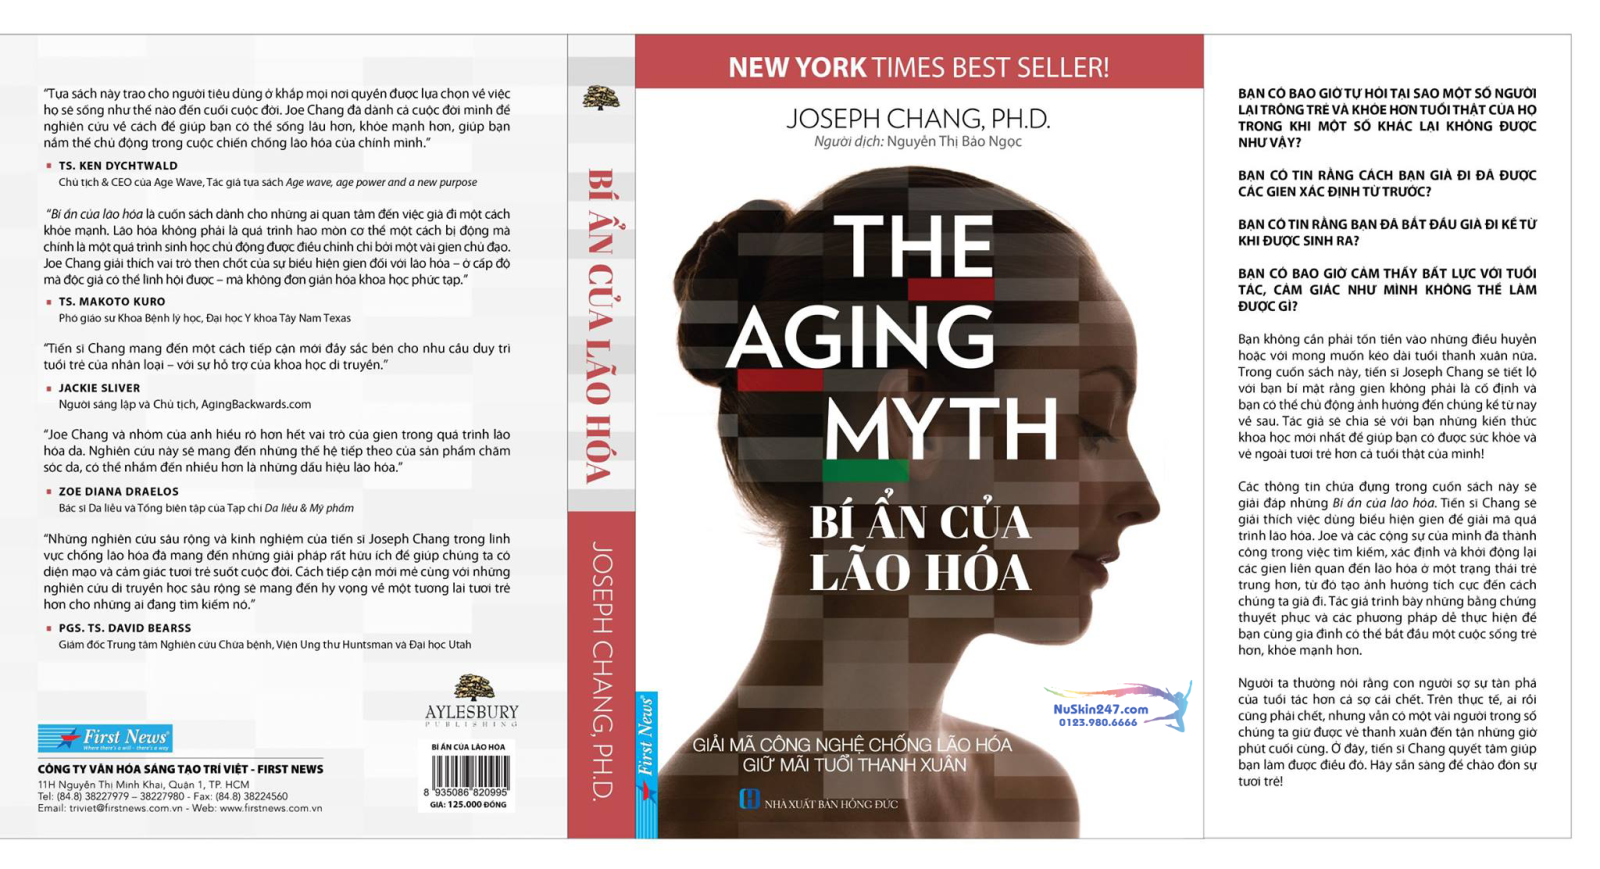 Bí Ẩn Của Lão Hóa - The Aging Myth